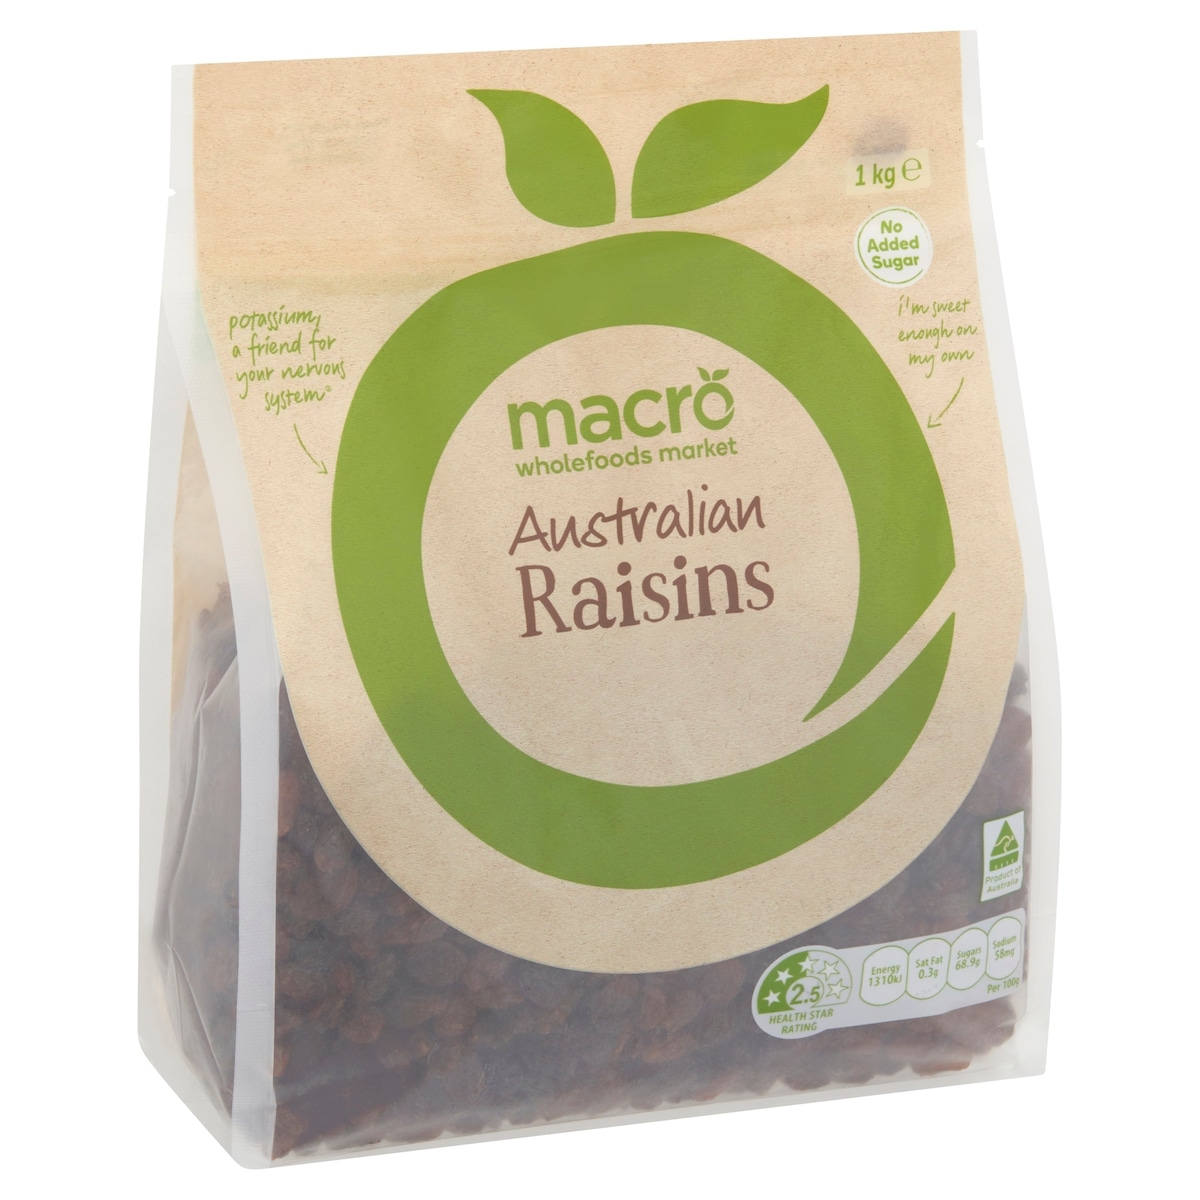 Macro Australian Raisins 1kg